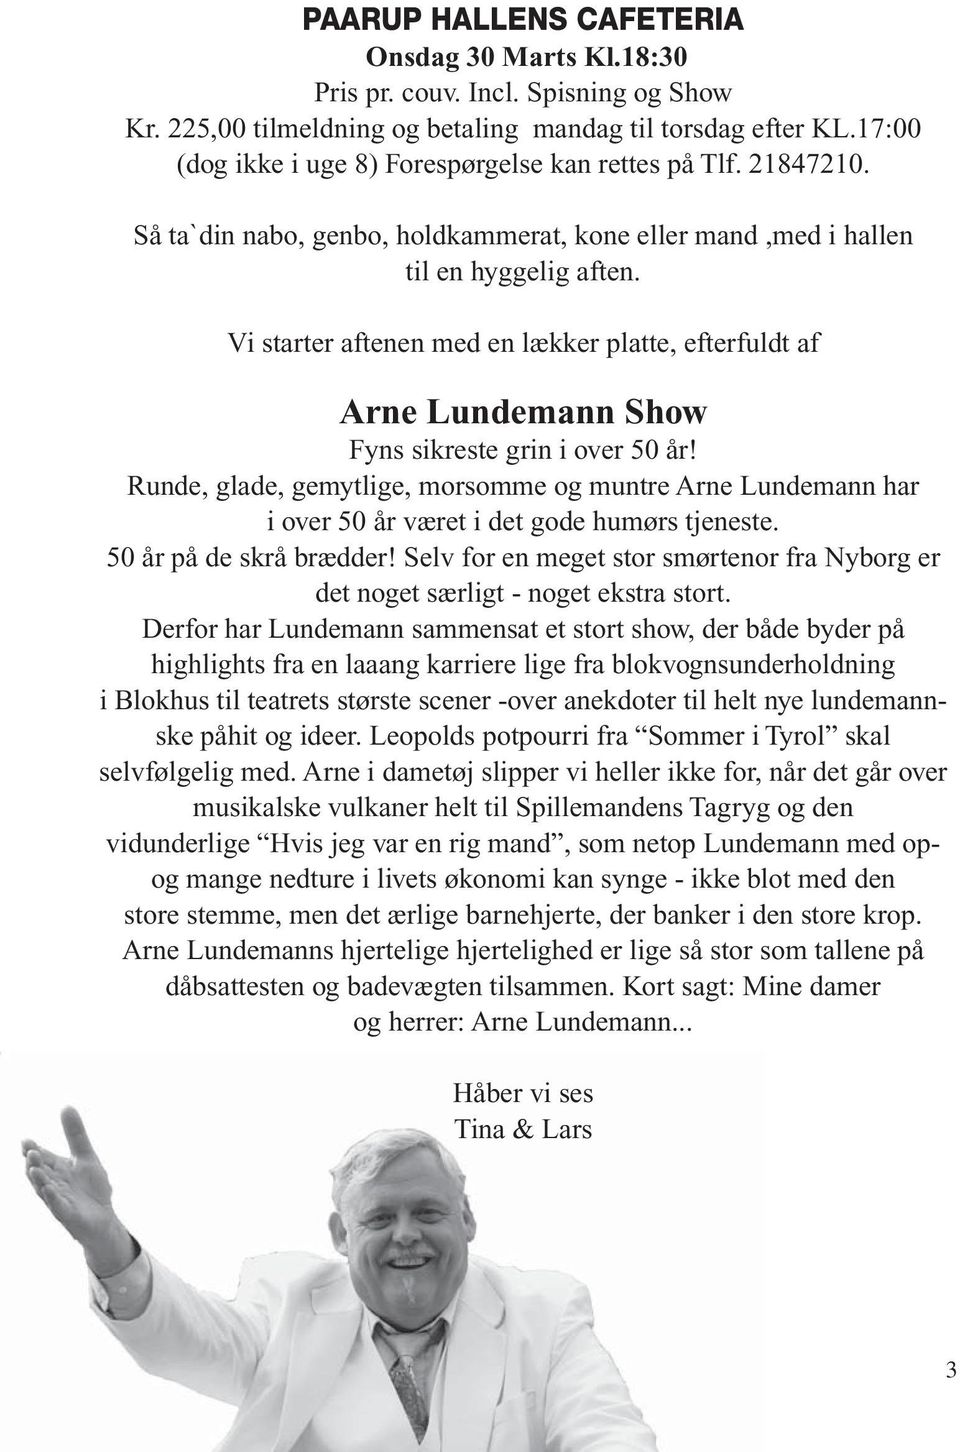 Vi starter aftenen med en lækker platte, efterfuldt af Arne Lundemann Show Fyns sikreste grin i over 50 år!